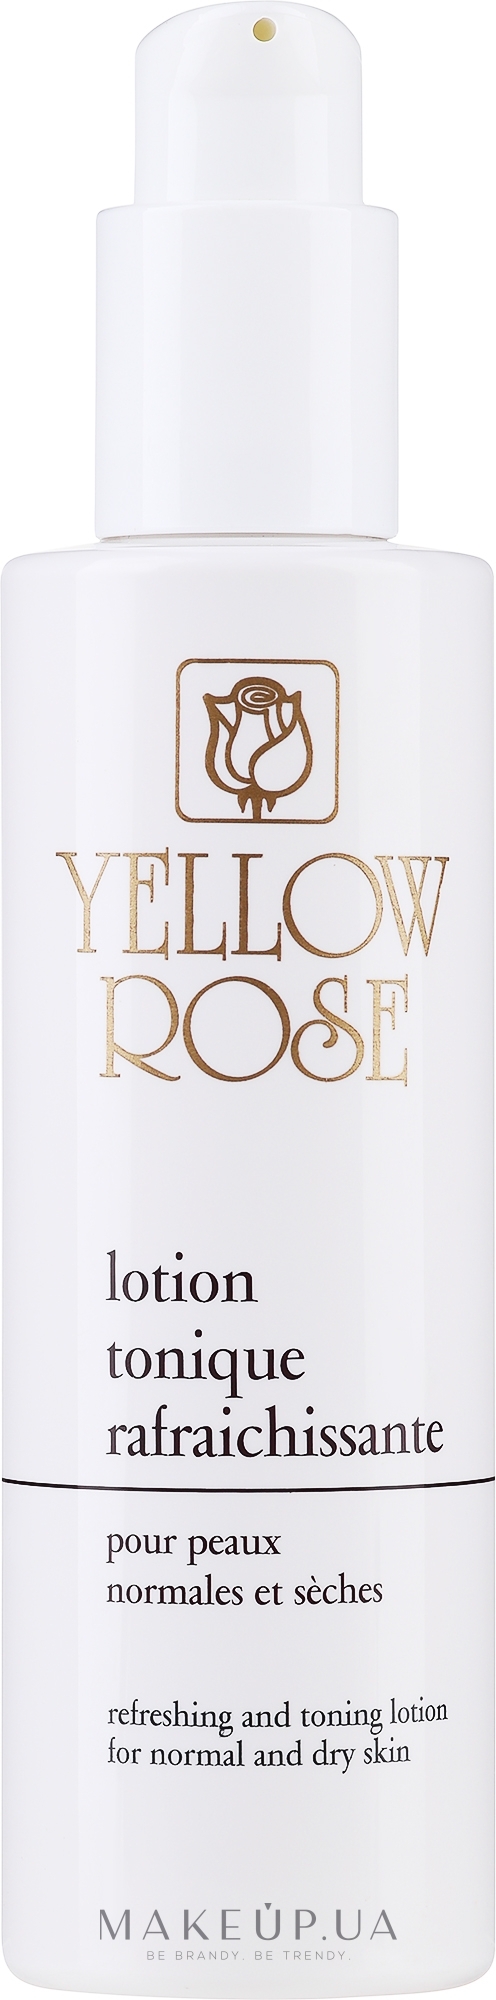 Освежающий тоник для сухой и нормальной кожи - Yellow Rose Lotion Tonique Rafraichissante — фото 200ml